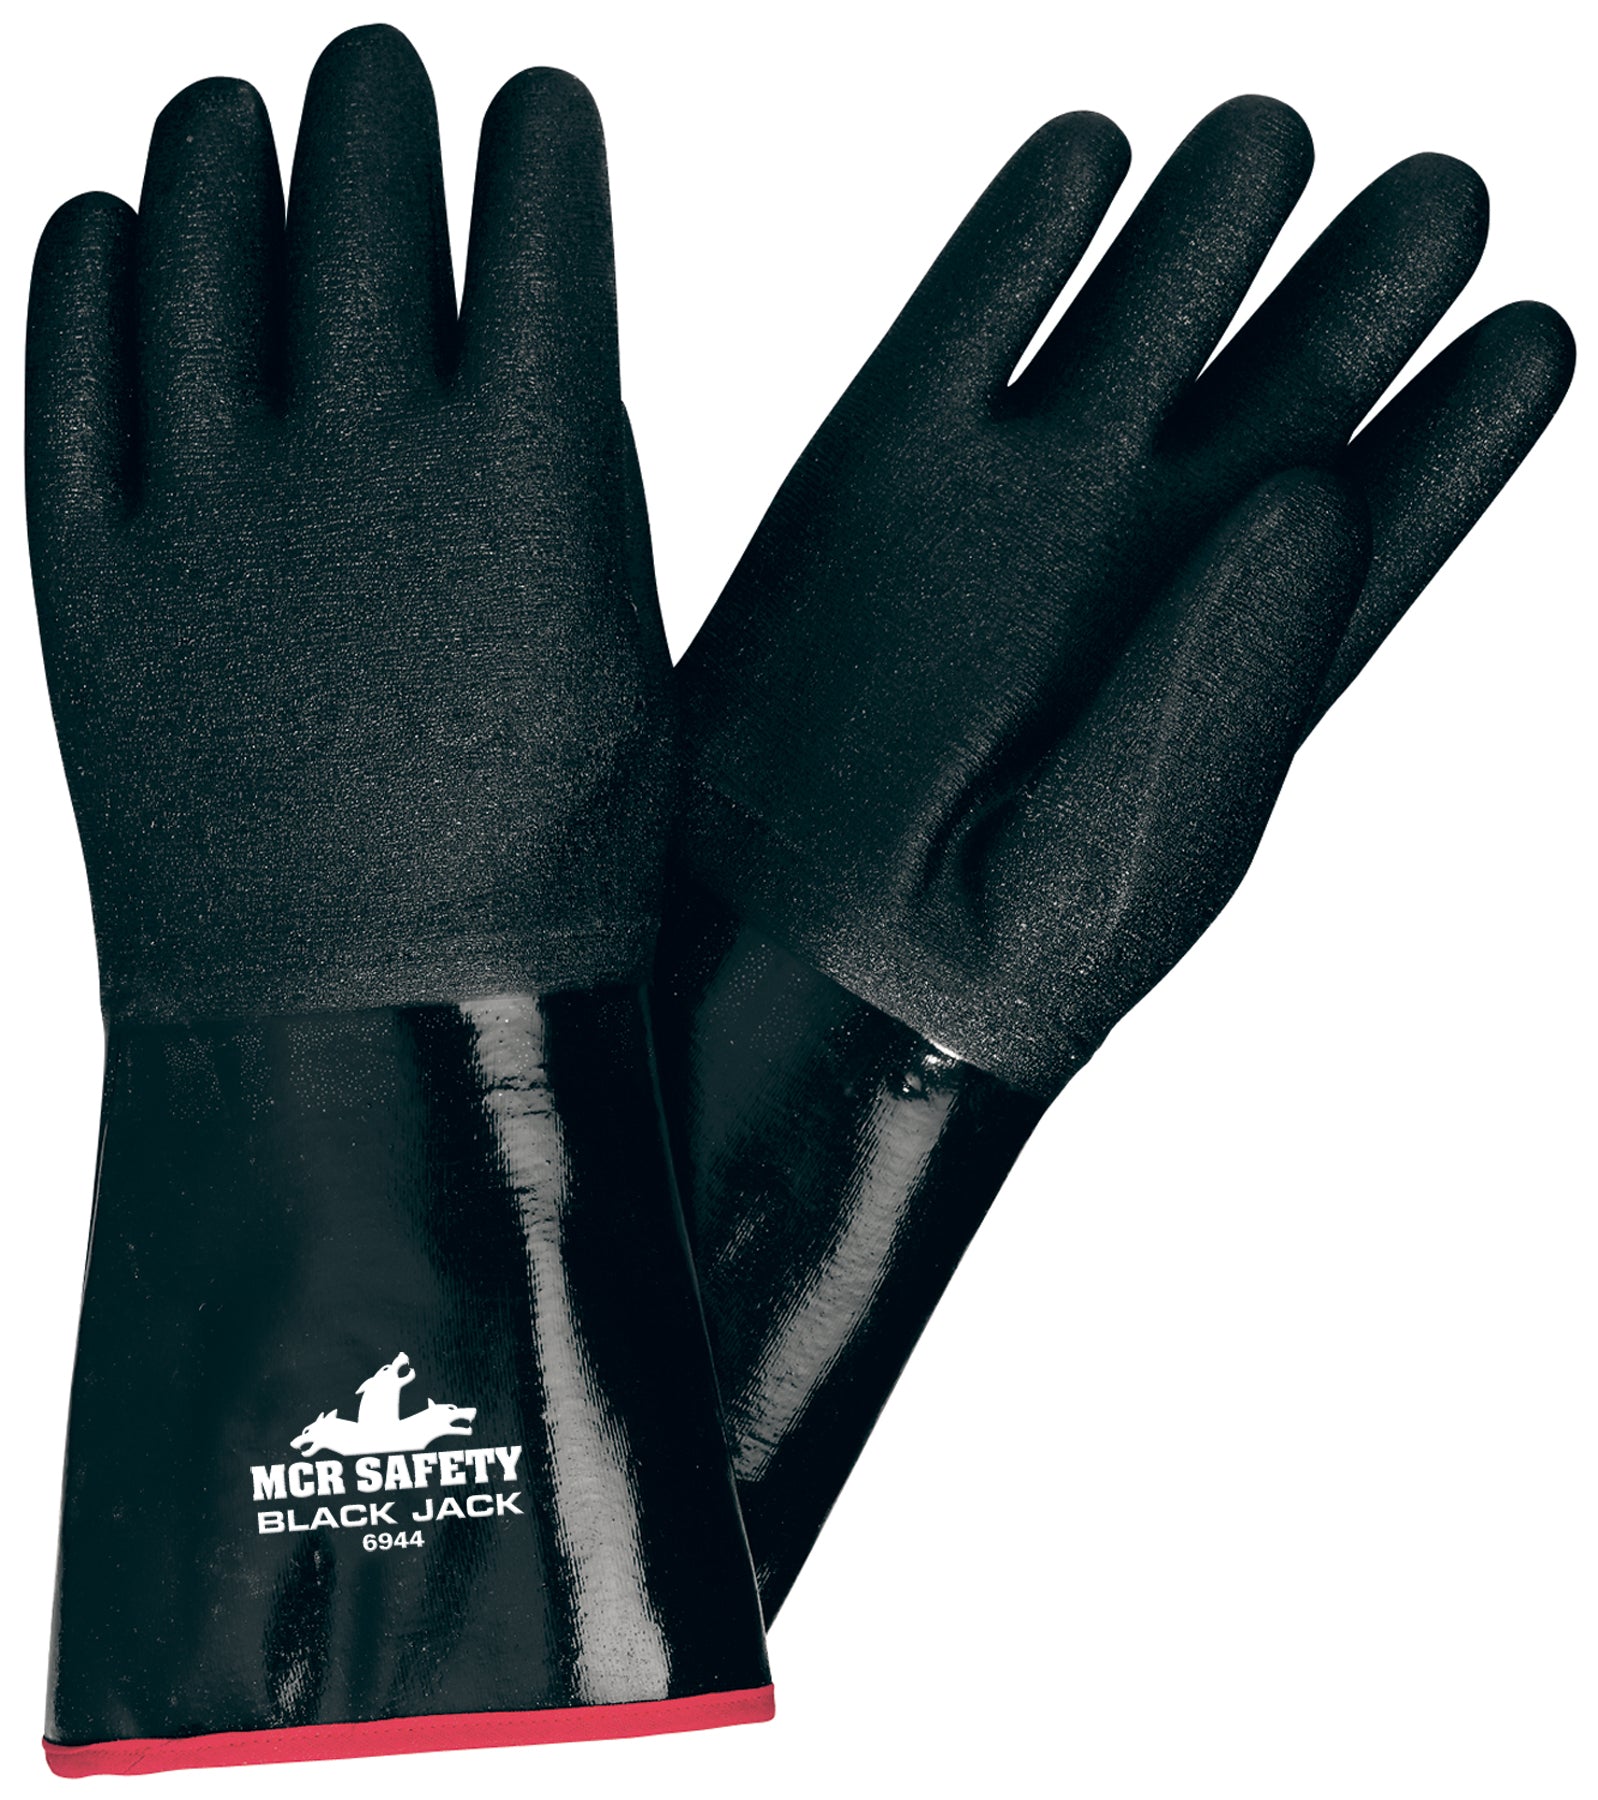 Proclimate Neoprene Waterproof Gloves - Black / M/L